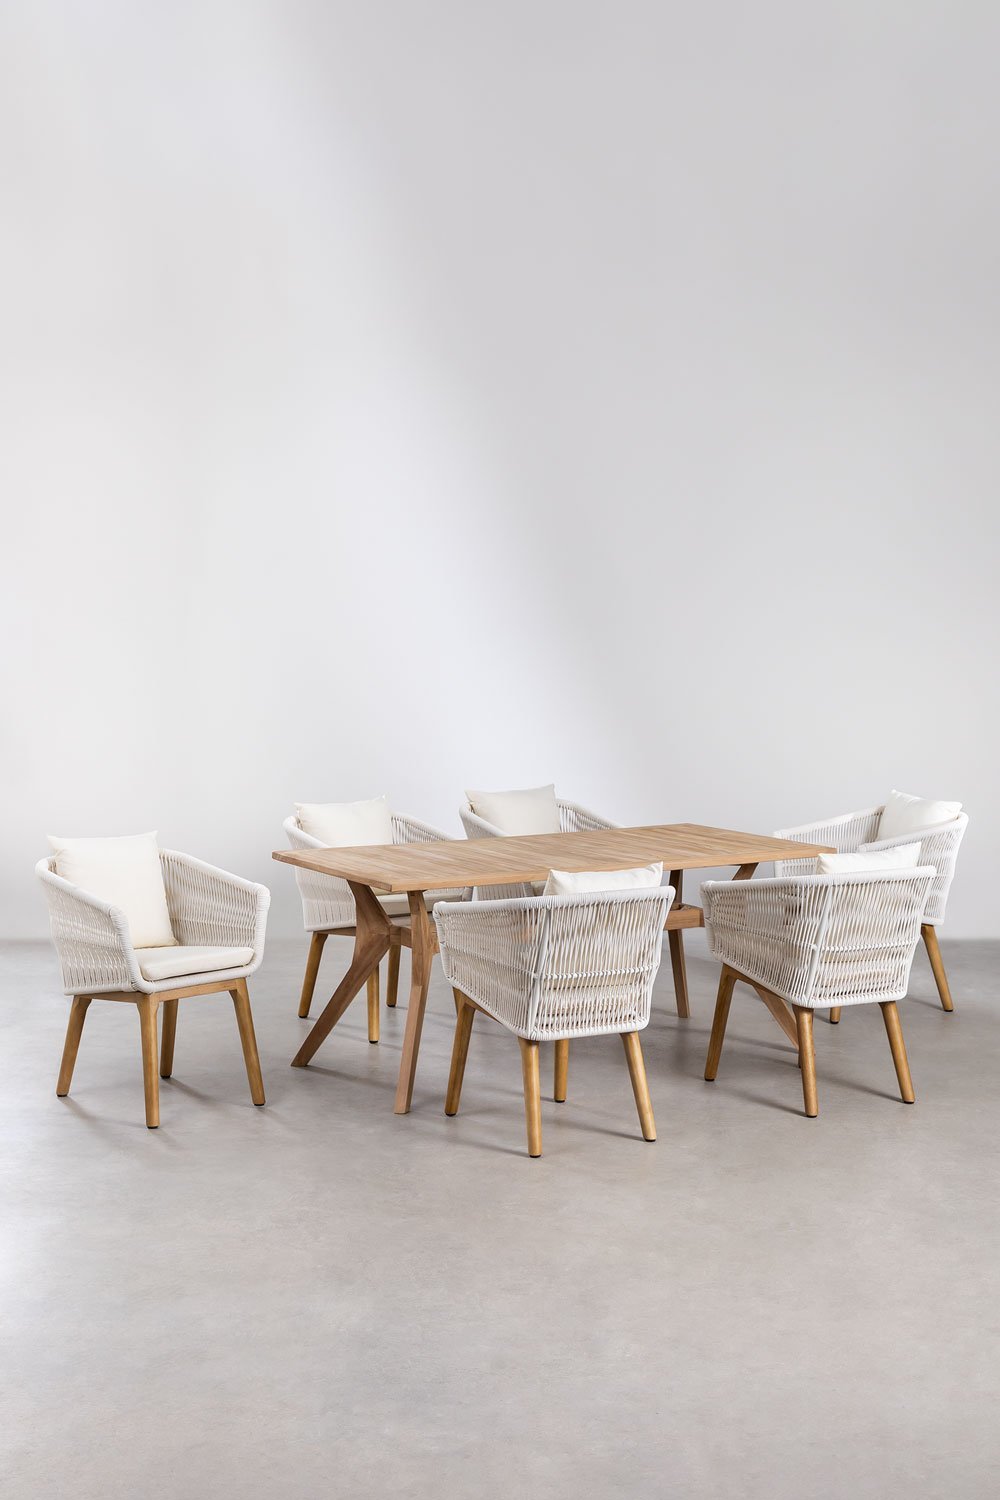 Prostokątny stół z drewna tekowego (180x90 cm) Yolen i 6 krzeseł ogrodowych Barker, obrazek w galerii 1